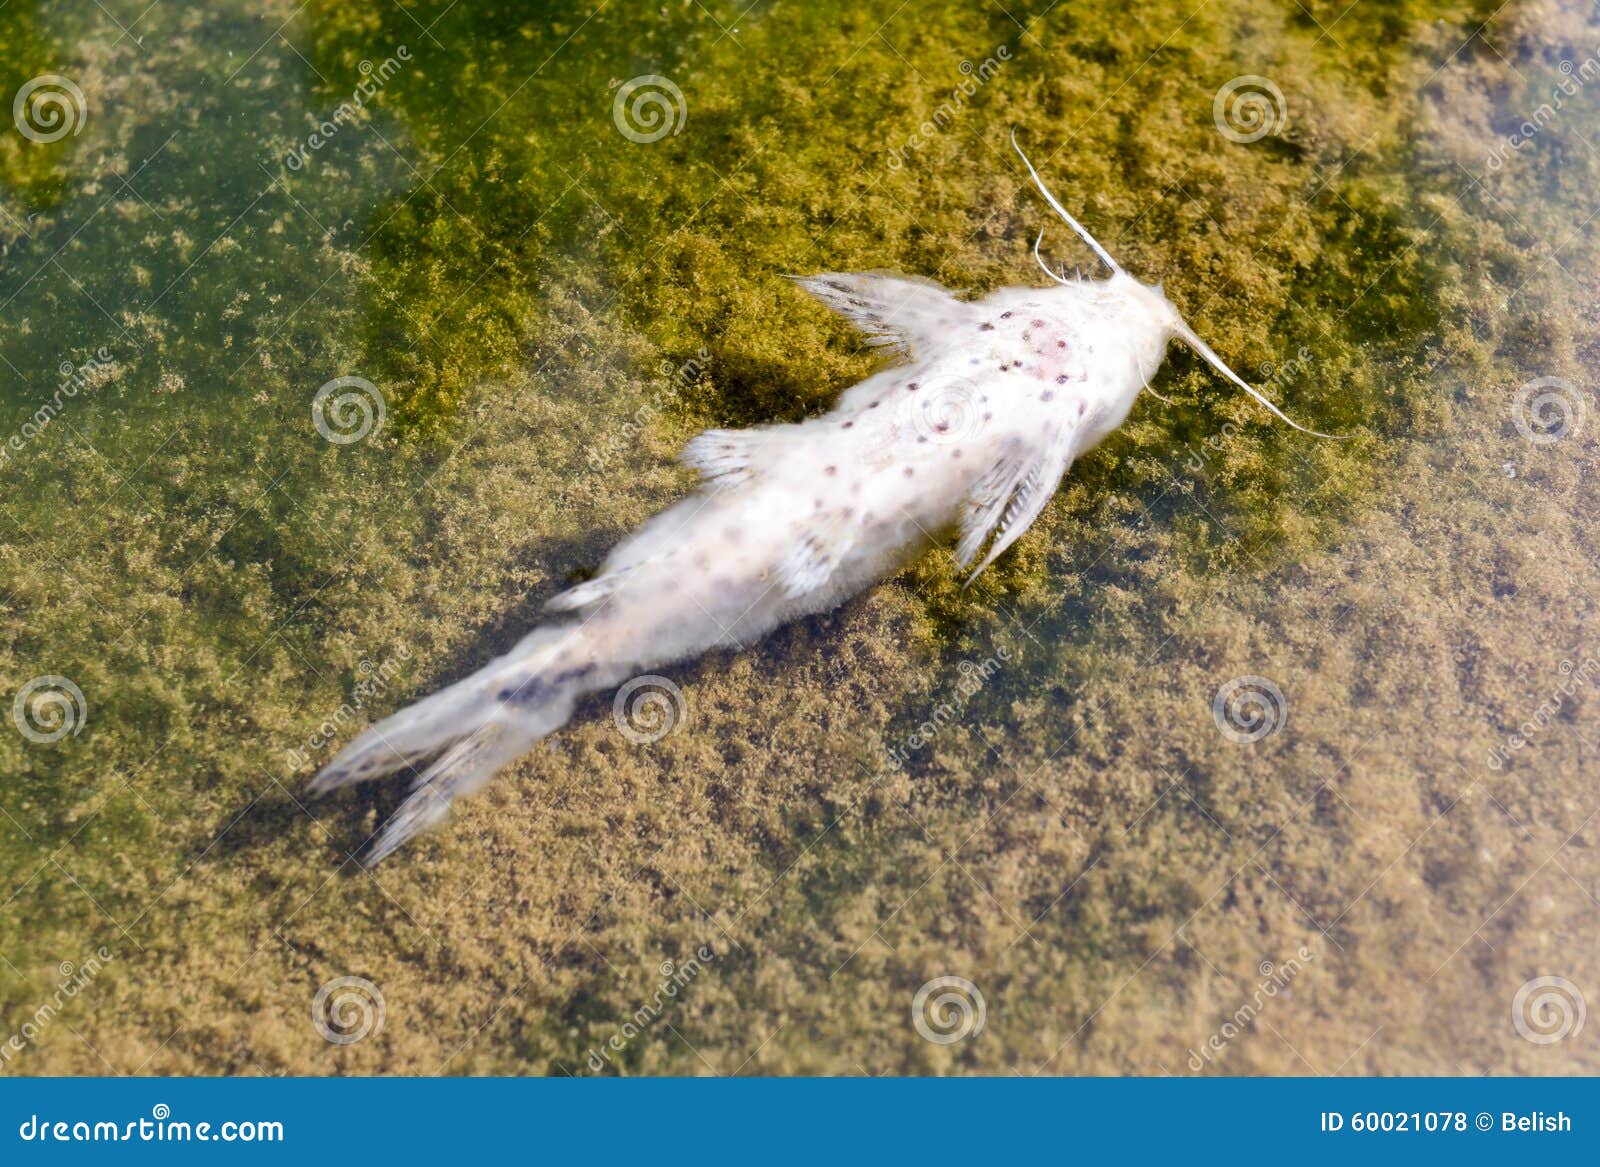 К чему снятся мертвые рыбы в воде